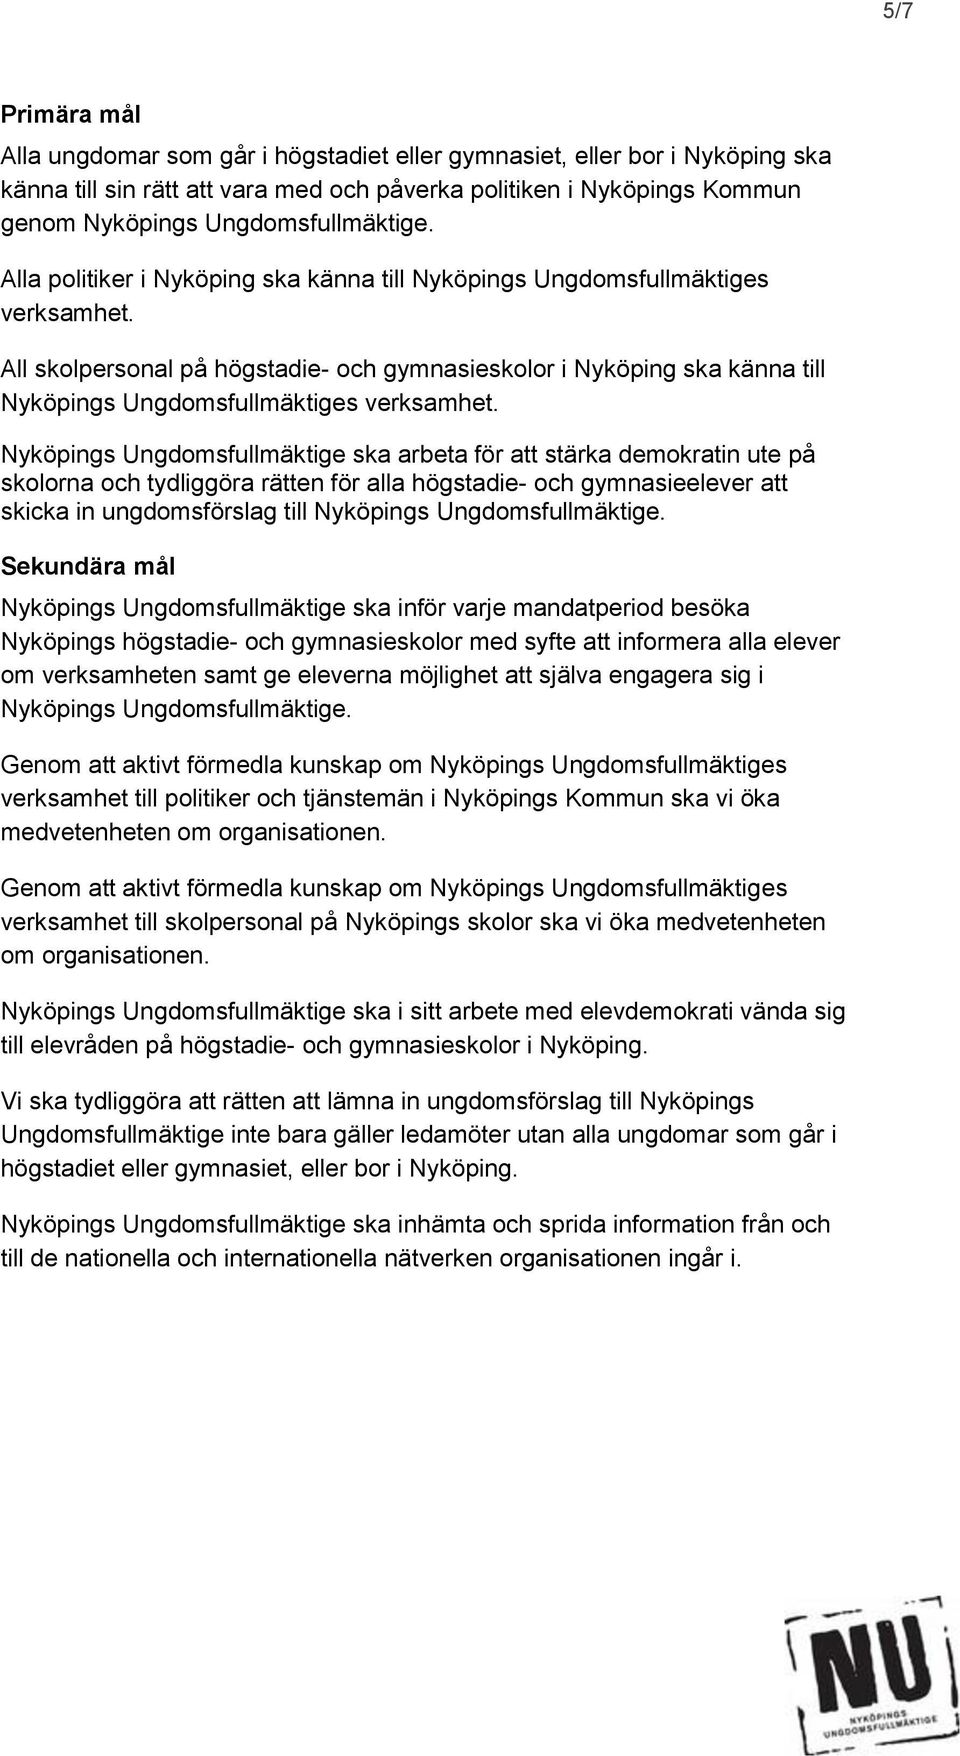 All skolpersonal på högstadie- och gymnasieskolor i Nyköping ska känna till Nyköpings Ungdomsfullmäktiges verksamhet.